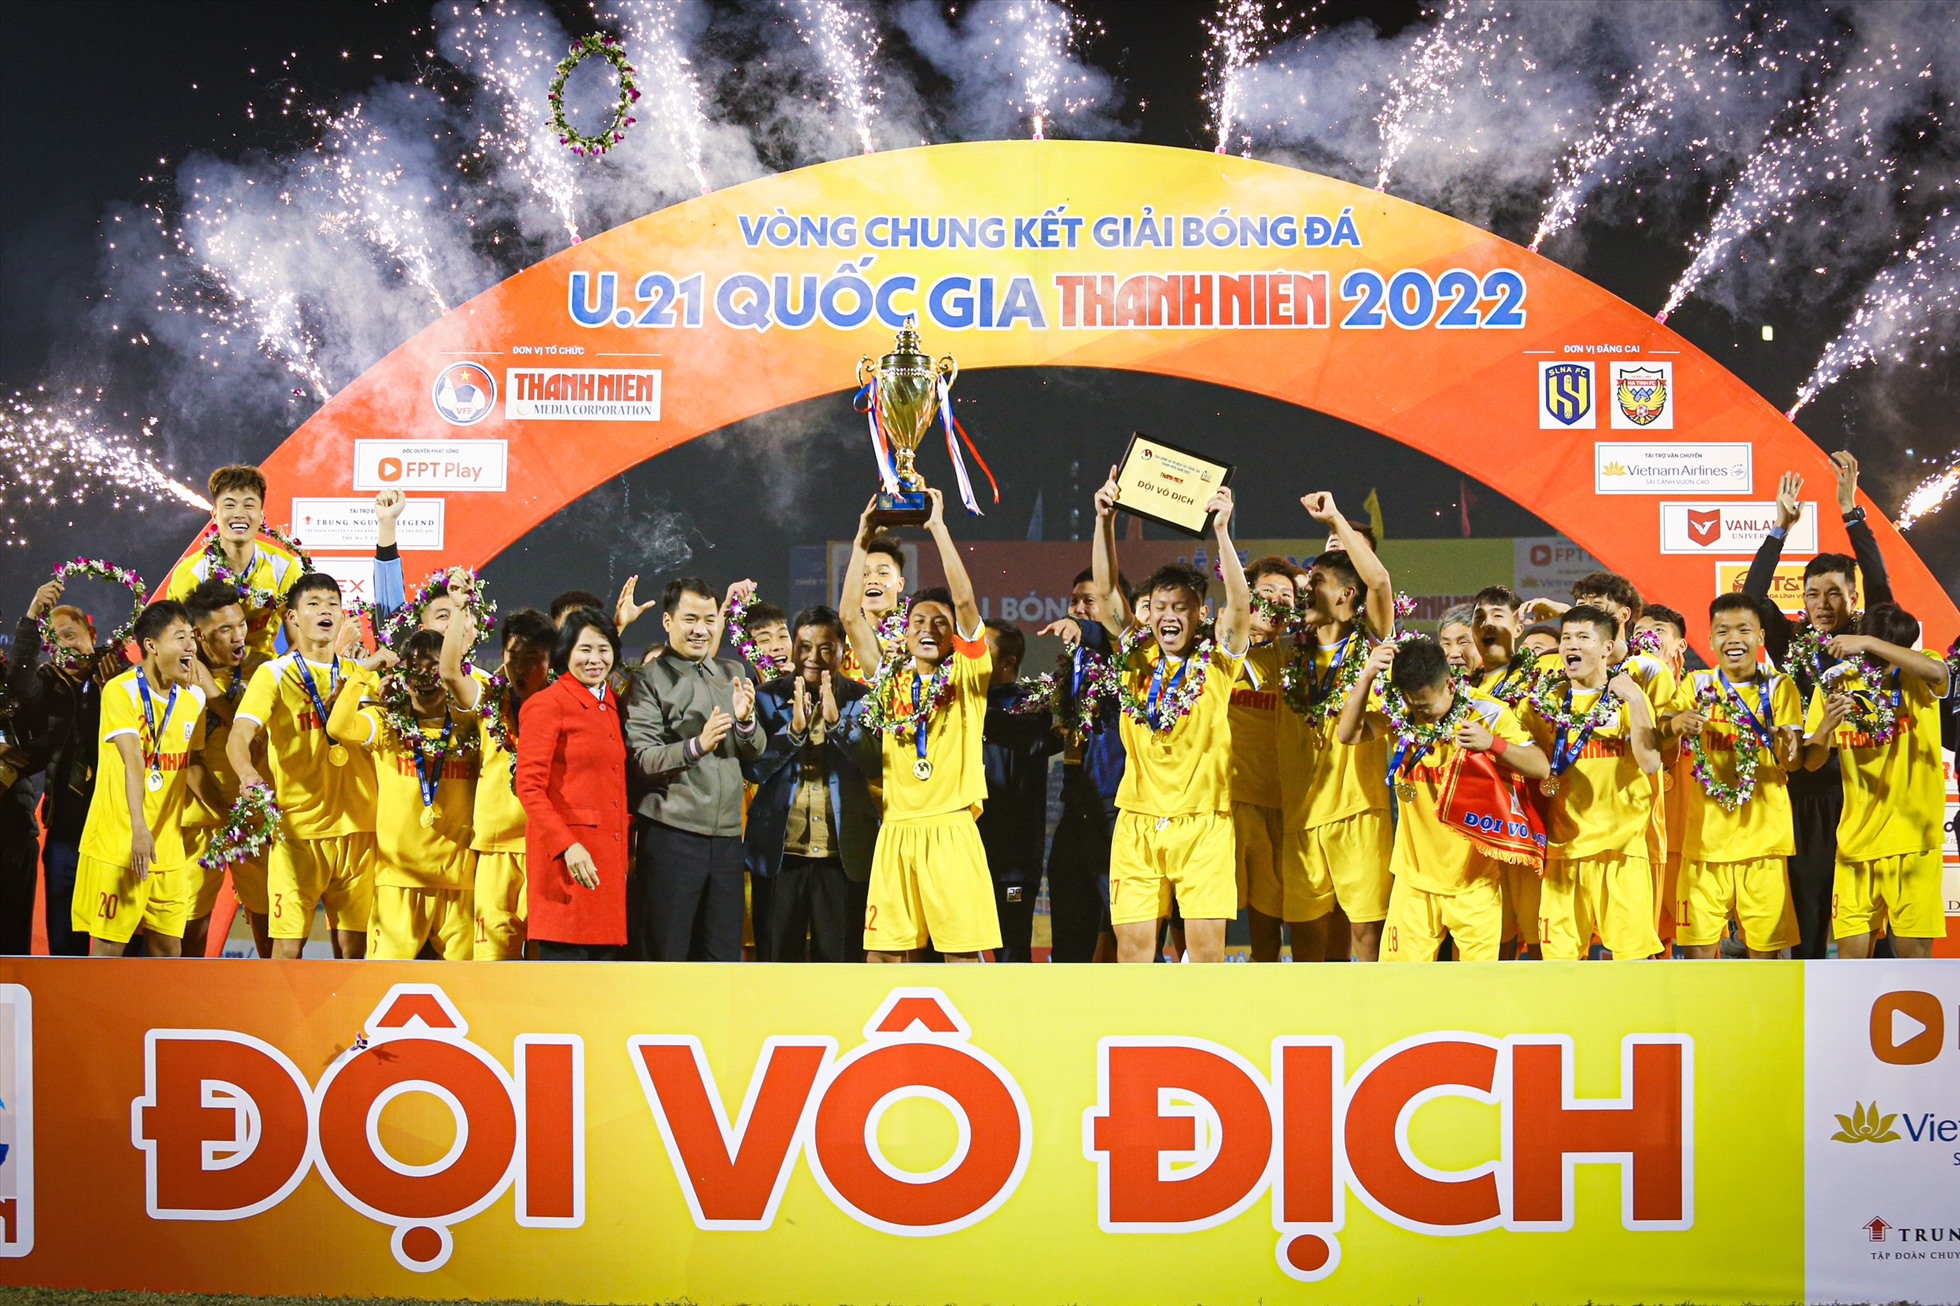 Với chức vô địch này, U21 Hà Nội chính thức vượt qua U21 Sông Lam Nghệ An (5 lần vô địch) để nắm giữ kỷ lục đội có nhiều chức vô địch giải U21 nhất với 6 lần đăng quang.